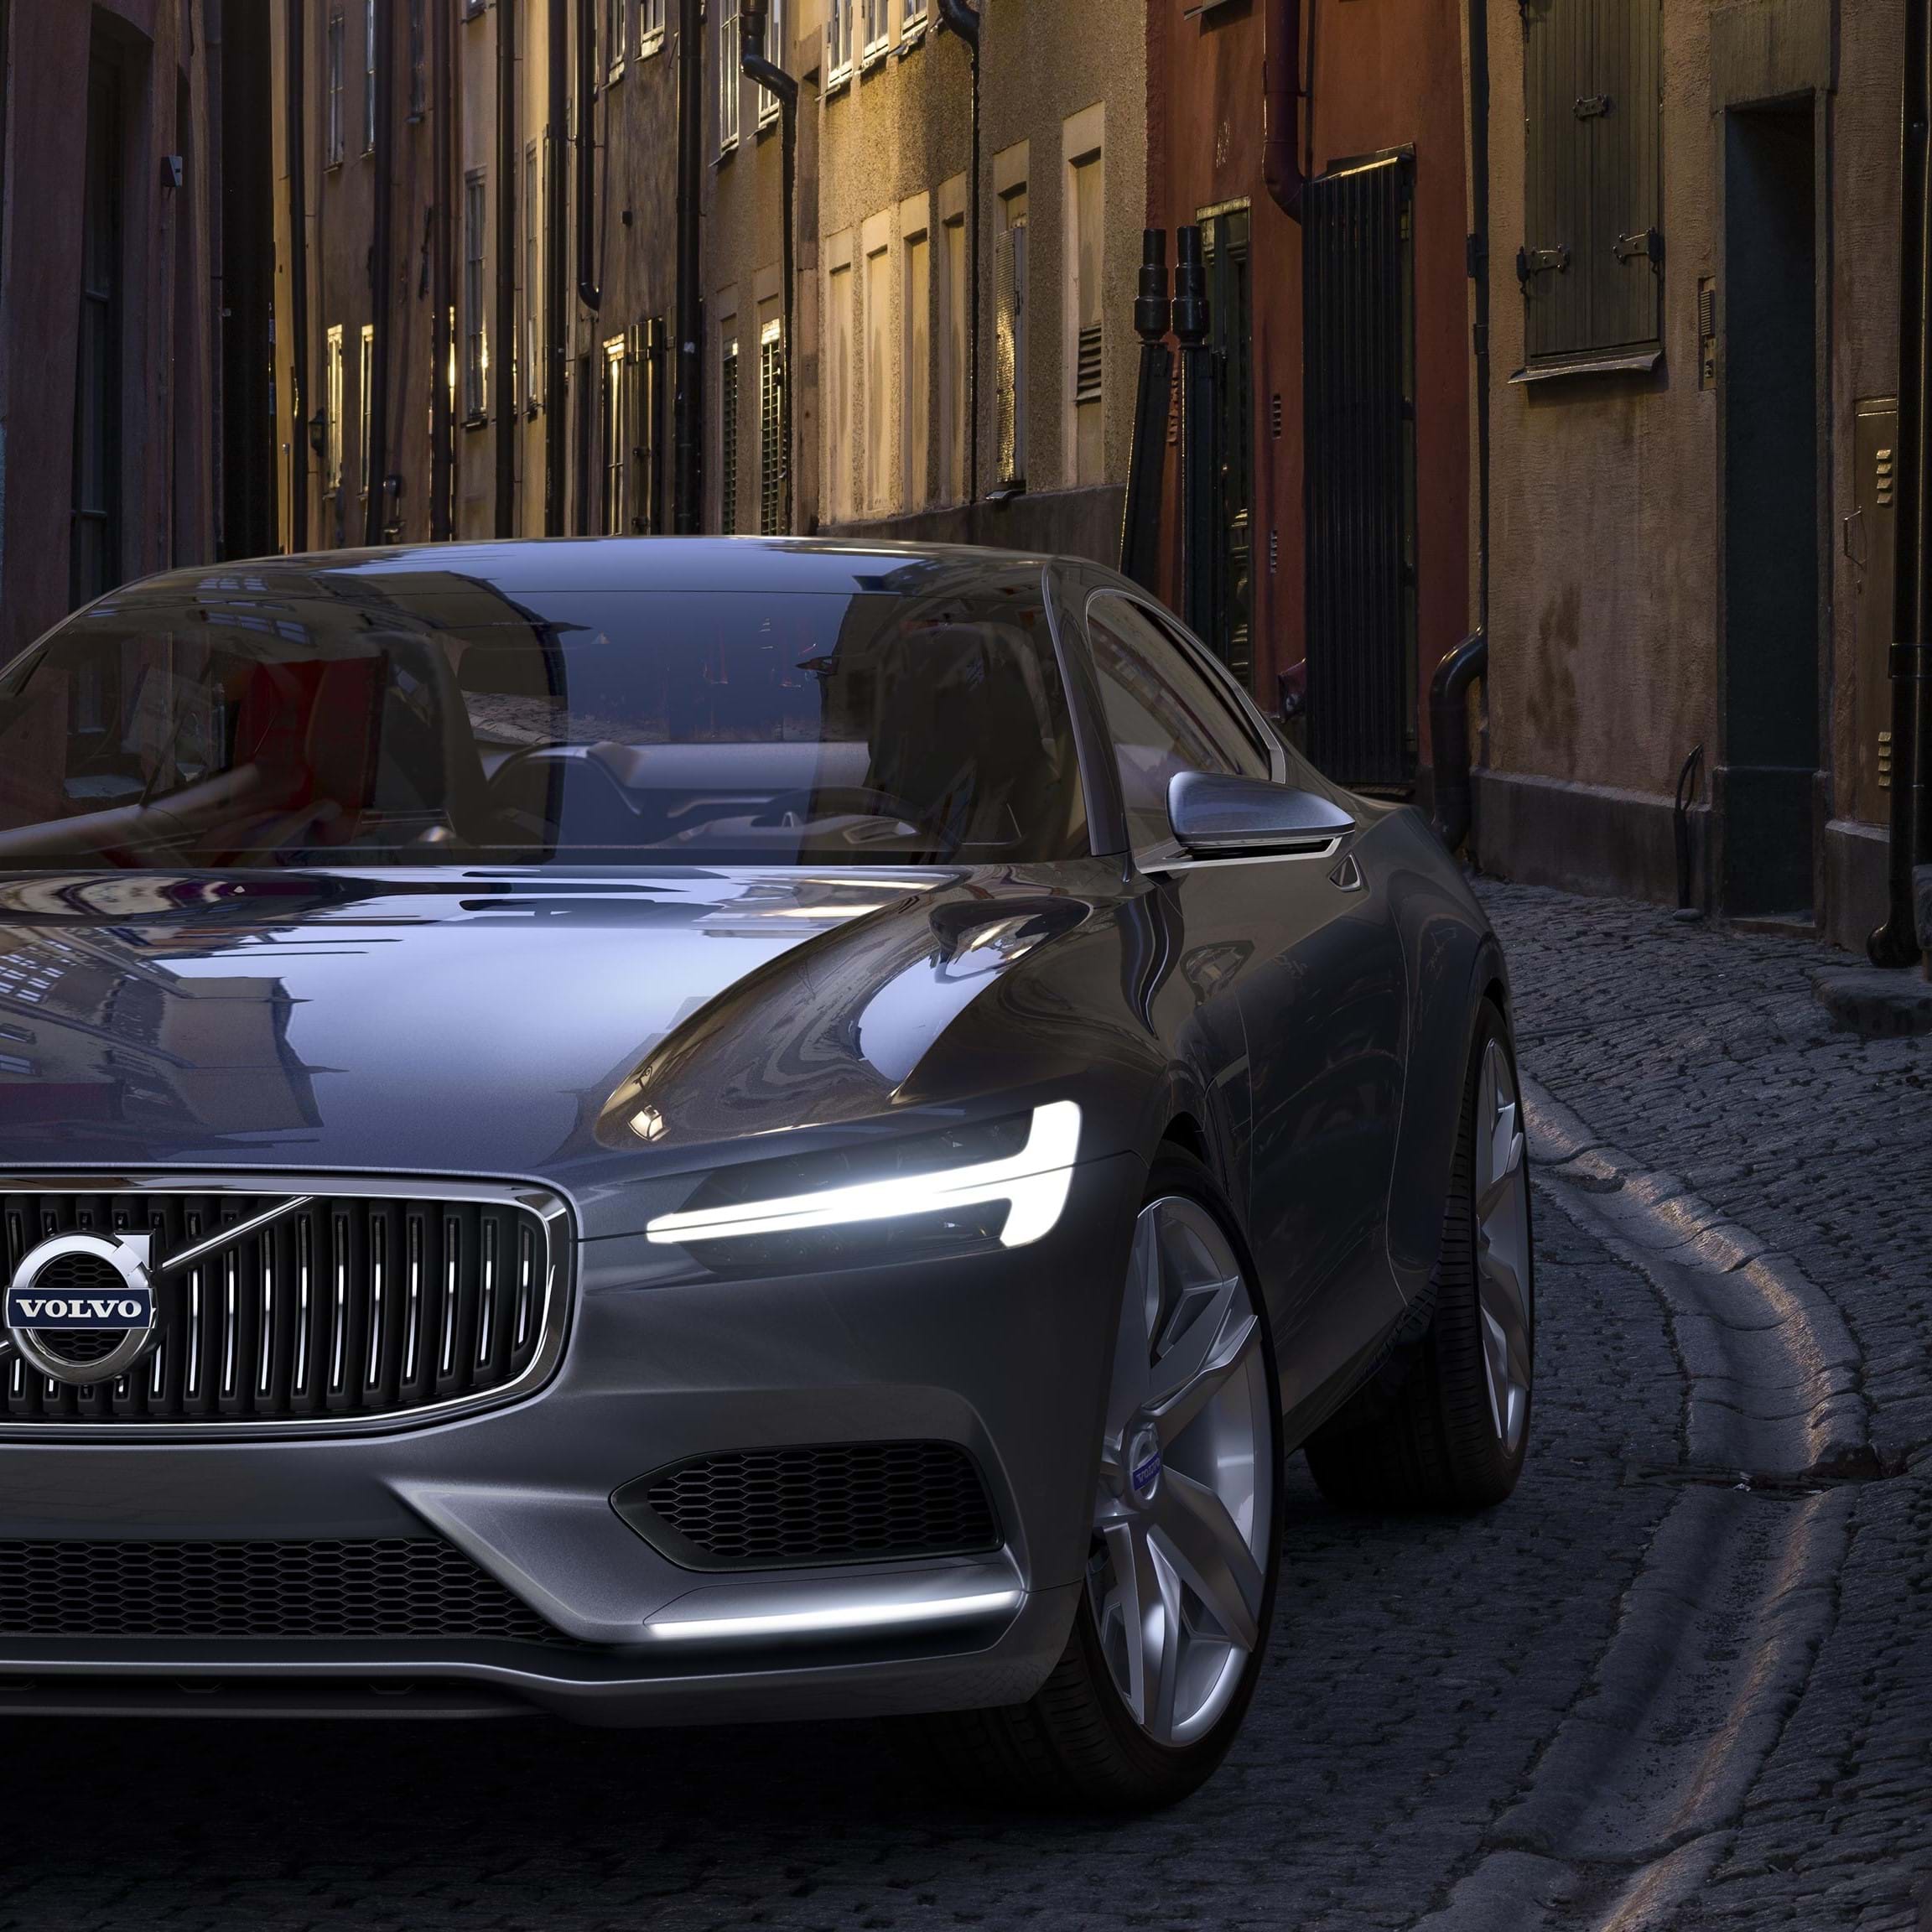 Volvo Concept Coupe gris circula por una calle empedrada de la ciudad